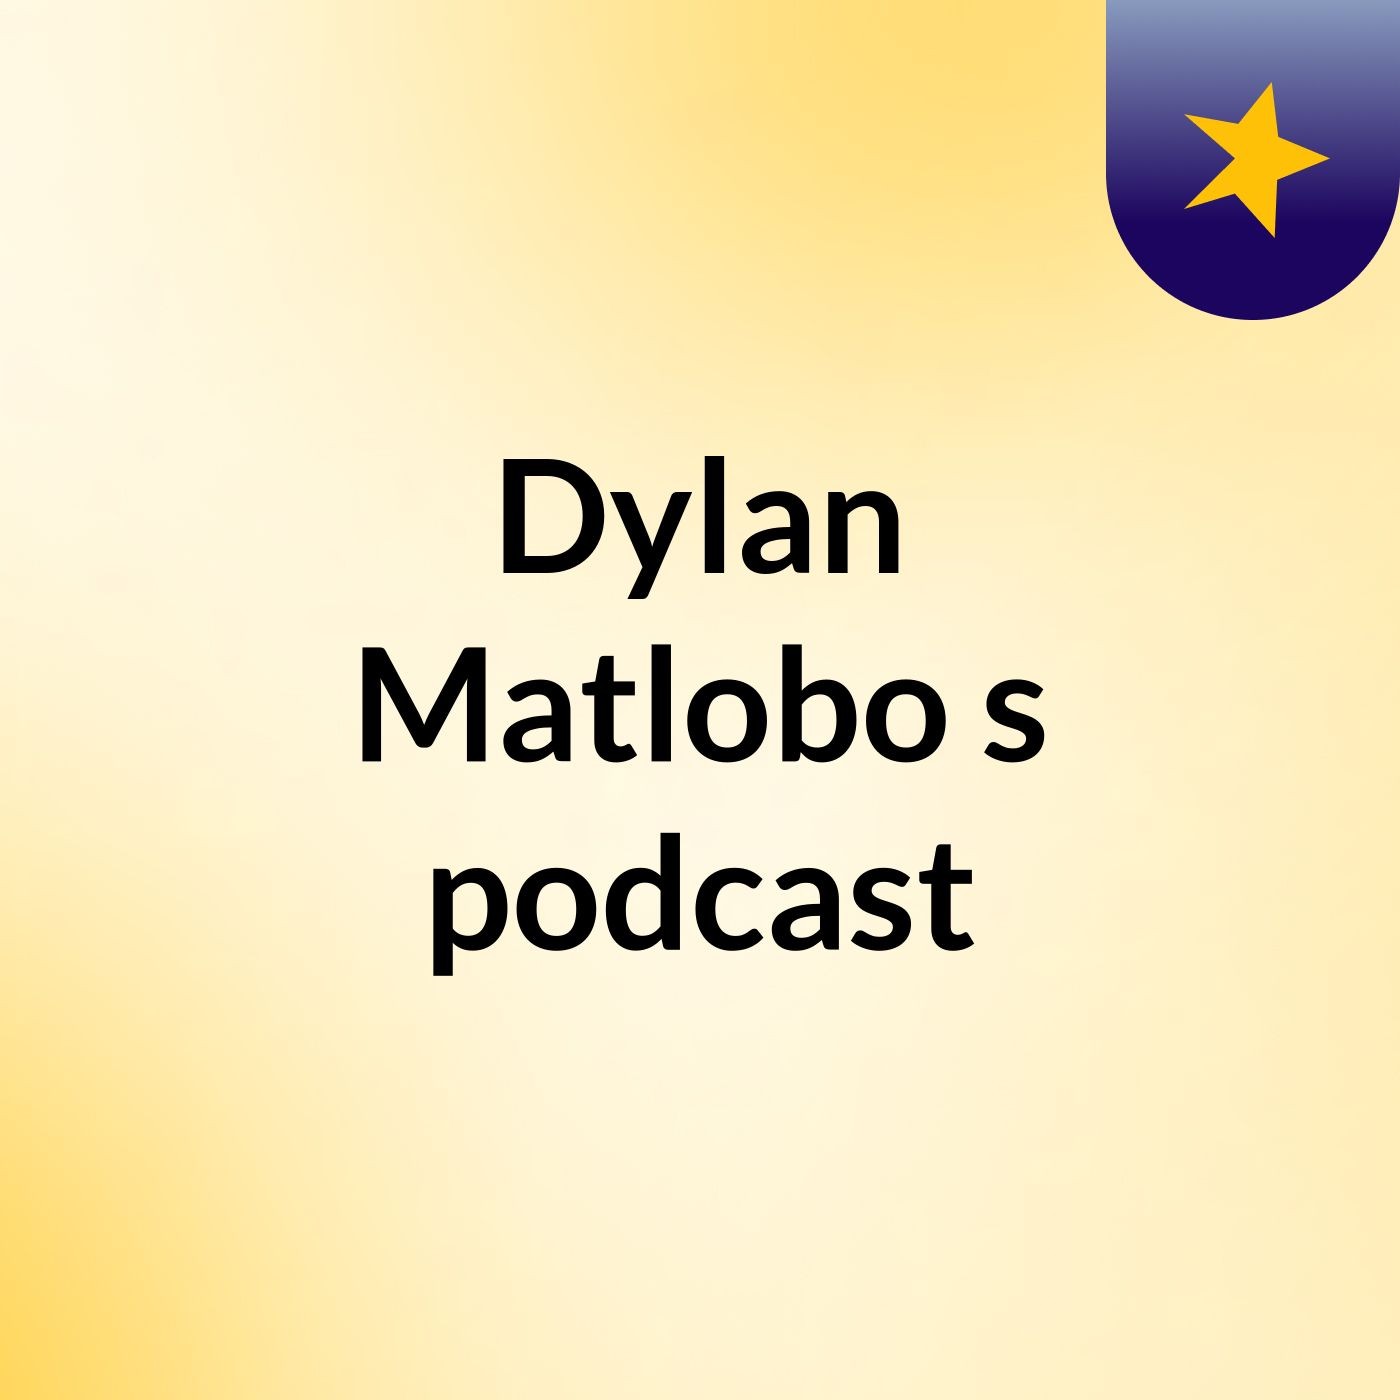 Episode 5 - Dylan Matlobo's podcast